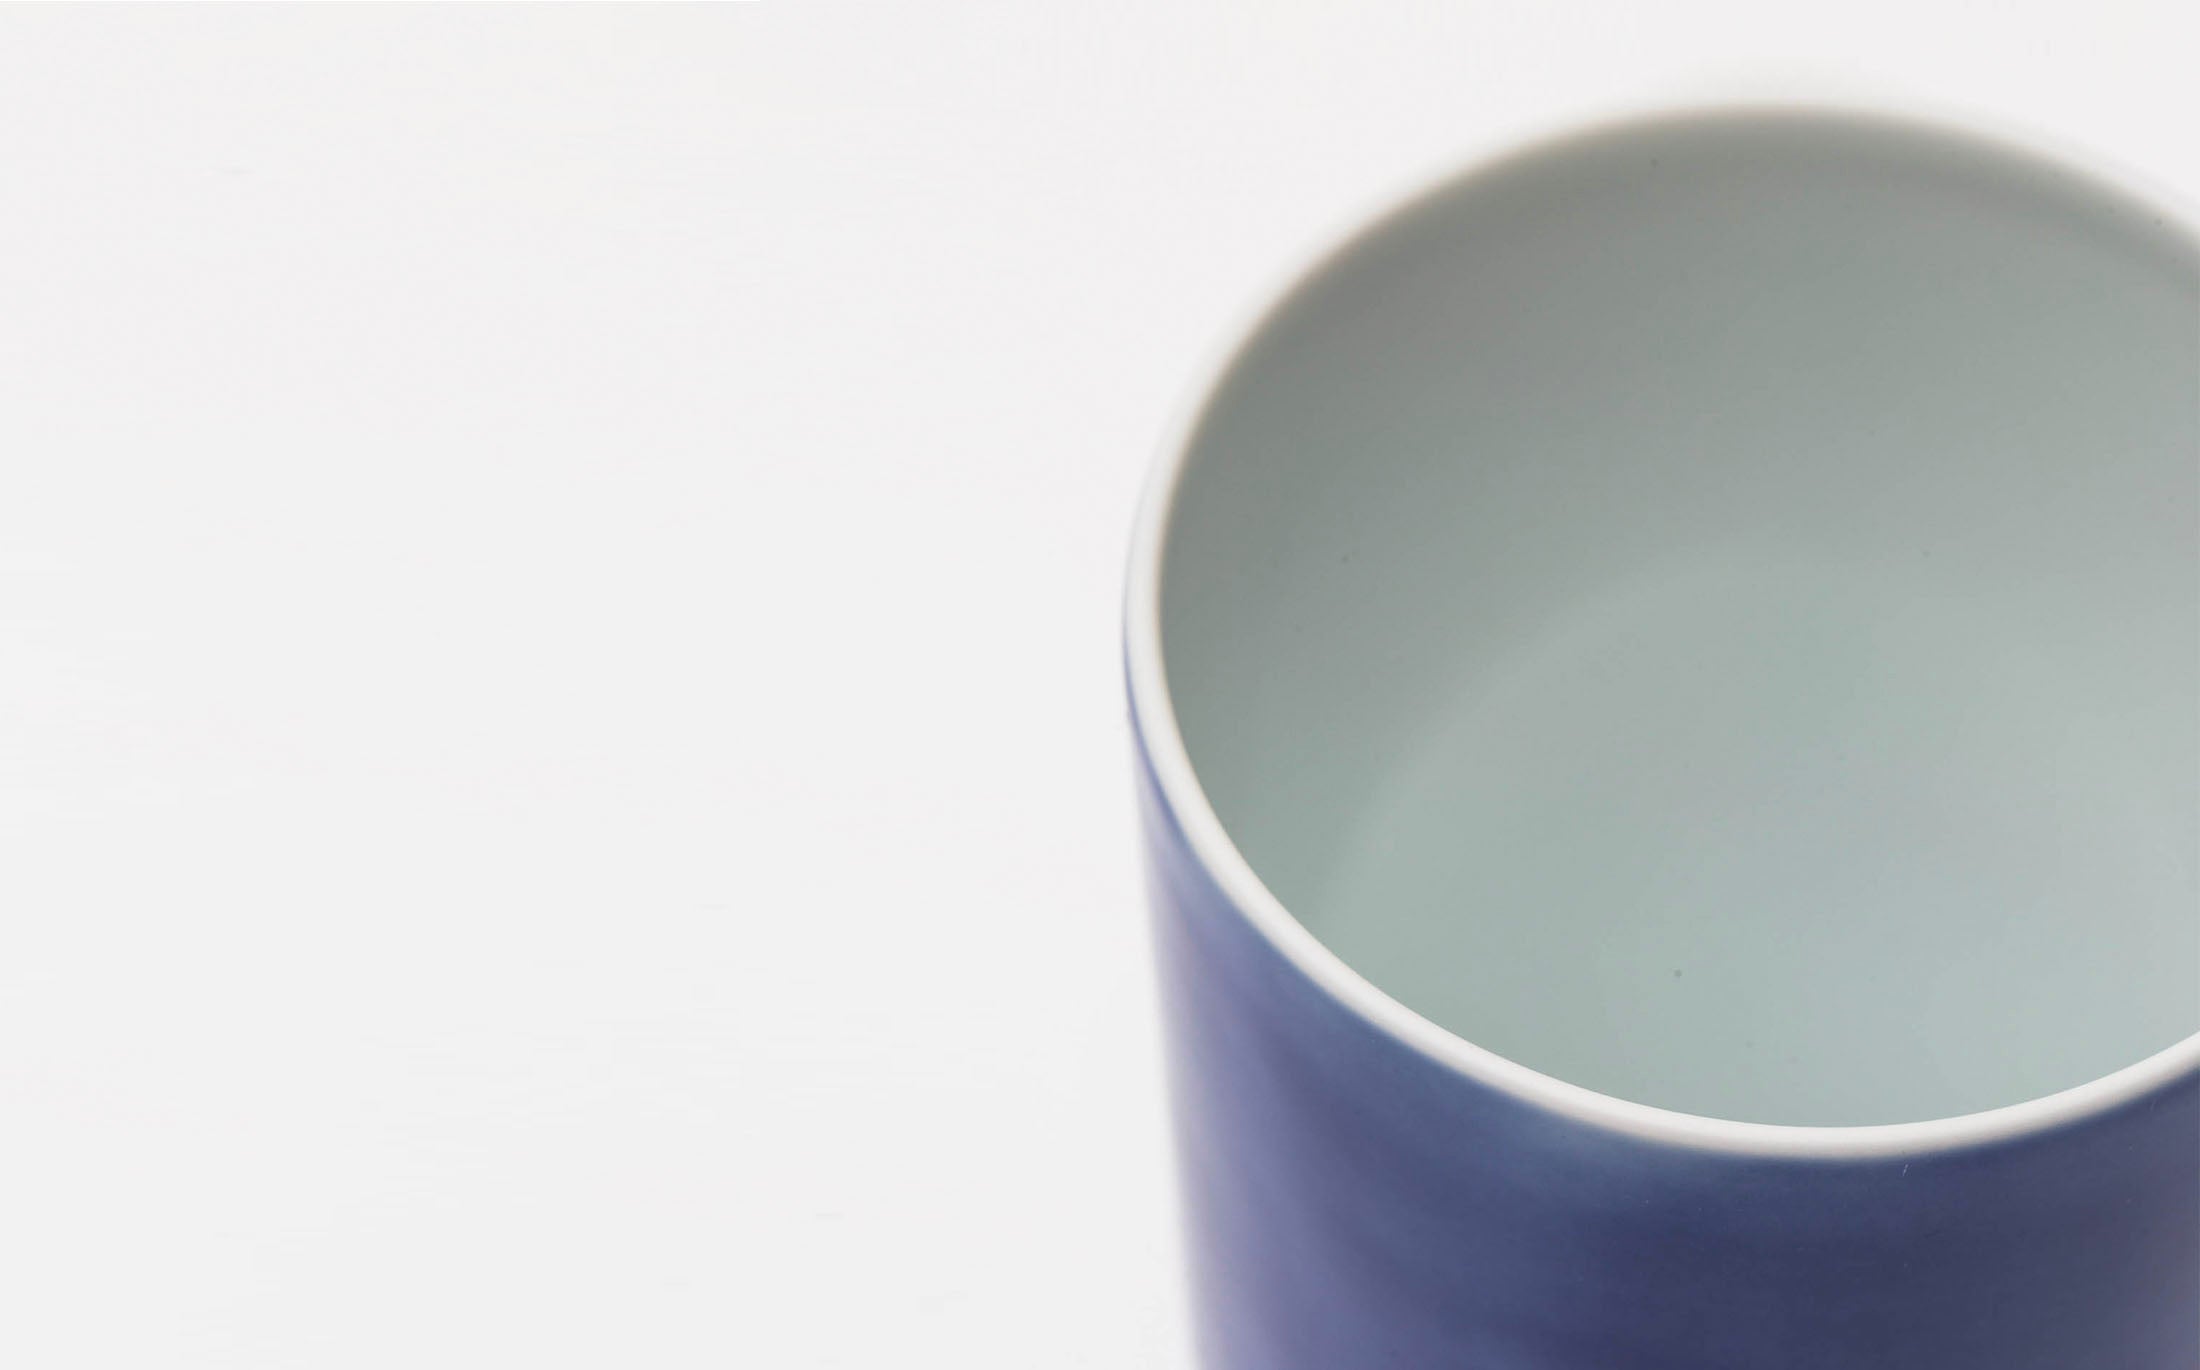 Hiya - Porcelain Overall Blue - Cup "Sake"